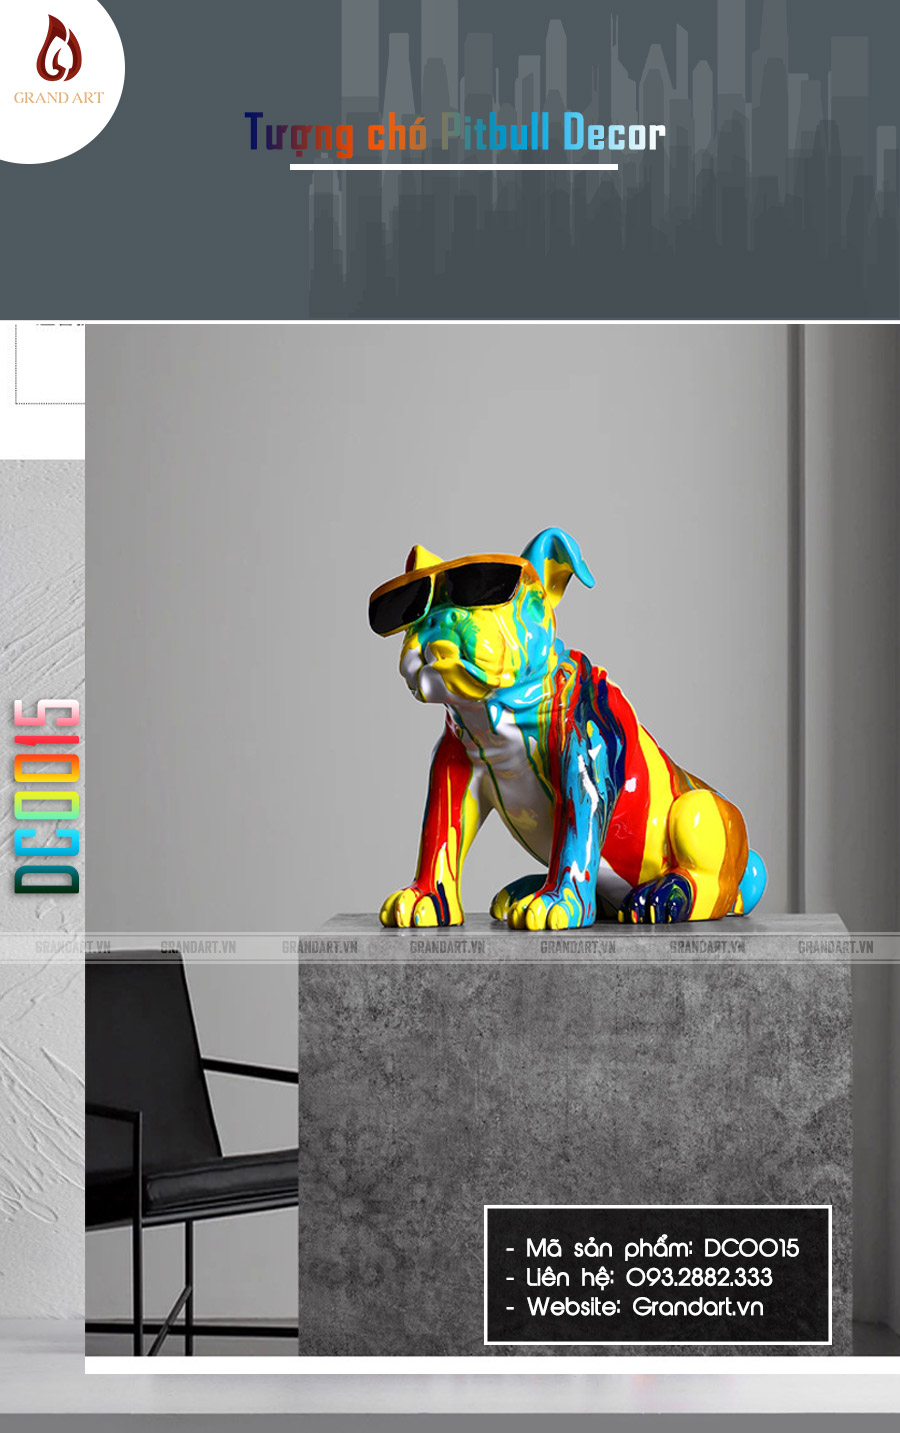 tượng chó Pitbull đa sắc decor trang trí - DC0015